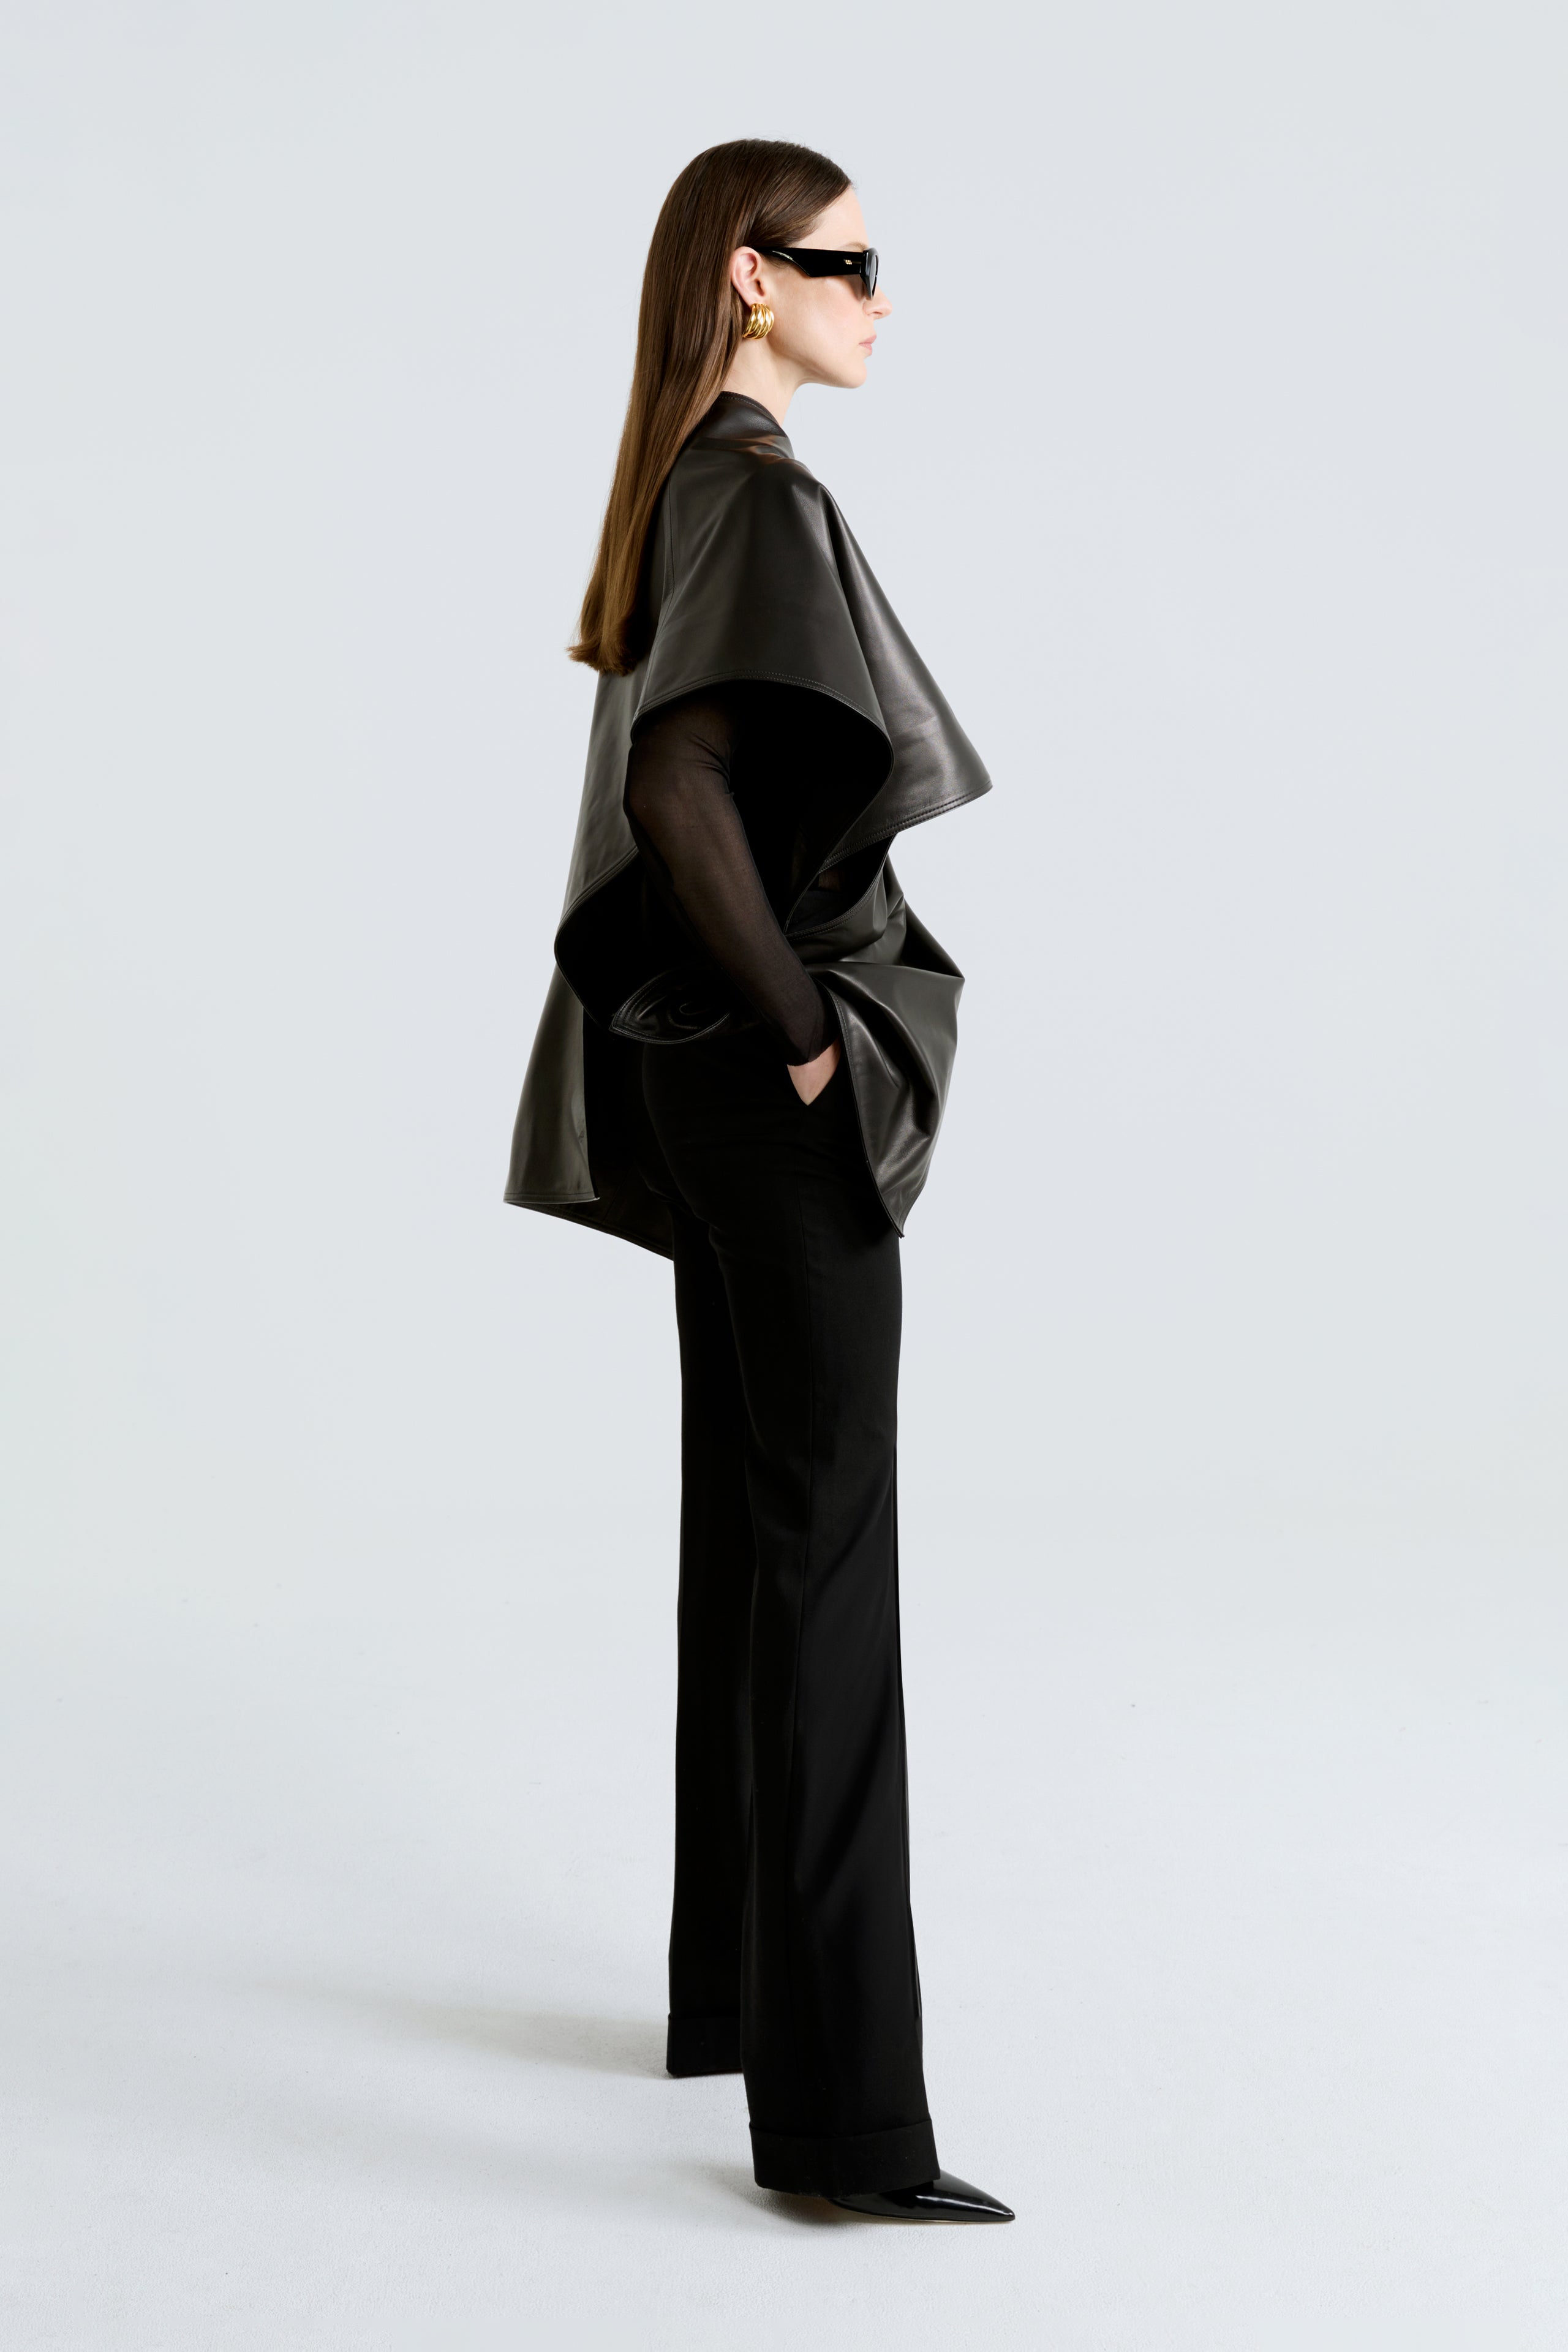 Model is wearing the Edra Black Sleek Leather Cape Side